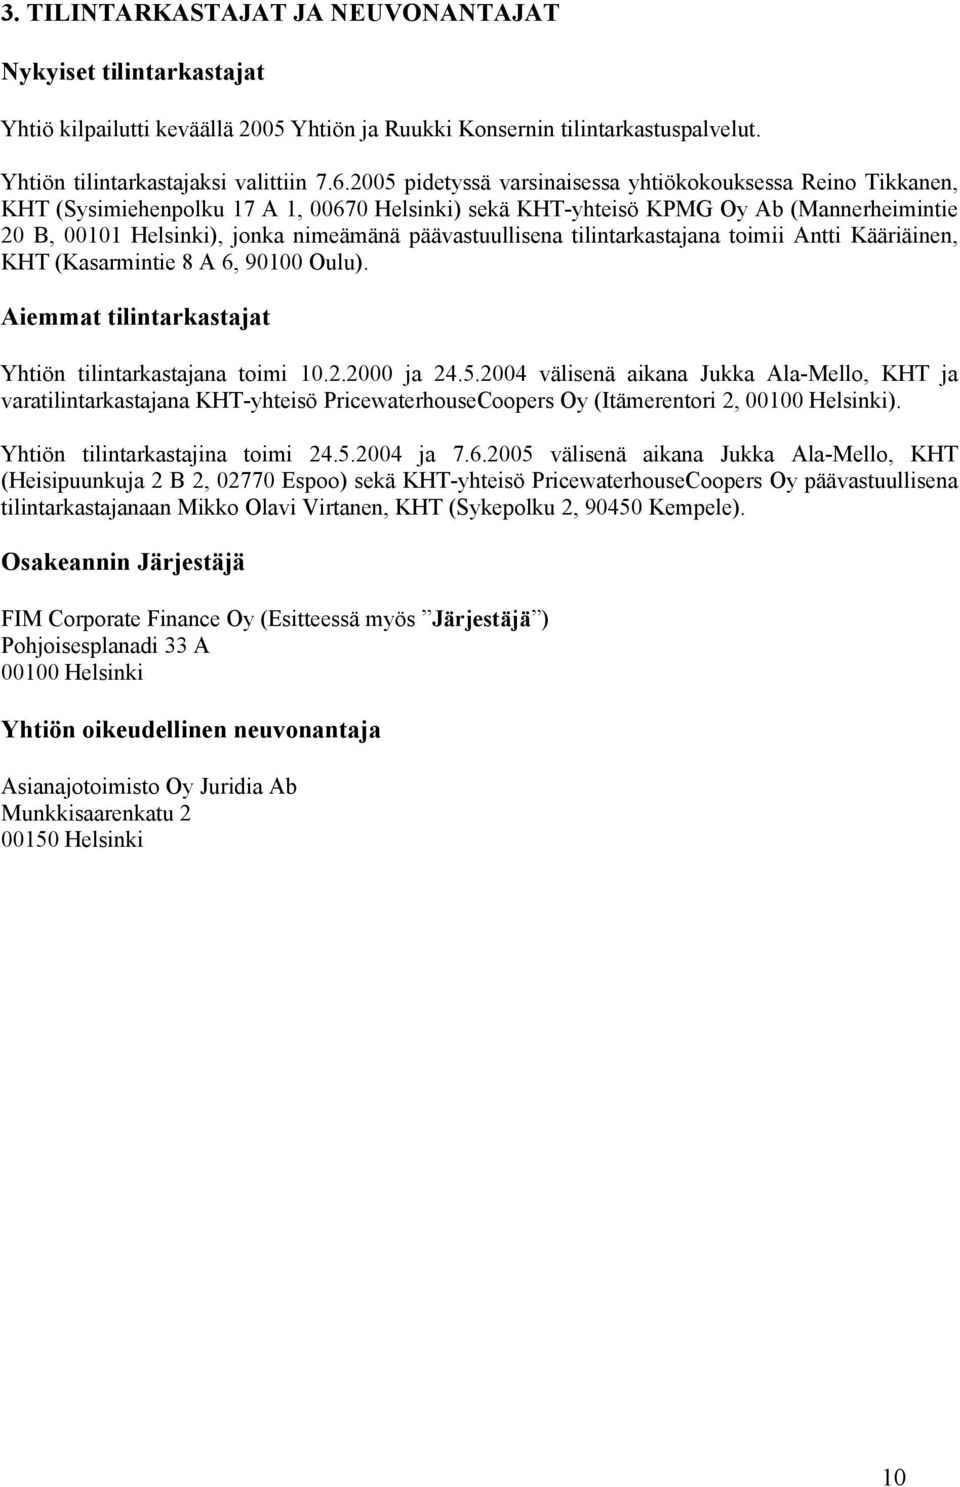 päävastuullisena tilintarkastajana toimii Antti Kääriäinen, KHT (Kasarmintie 8 A 6, 90100 Oulu). Aiemmat tilintarkastajat Yhtiön tilintarkastajana toimi 10.2.2000 ja 24.5.